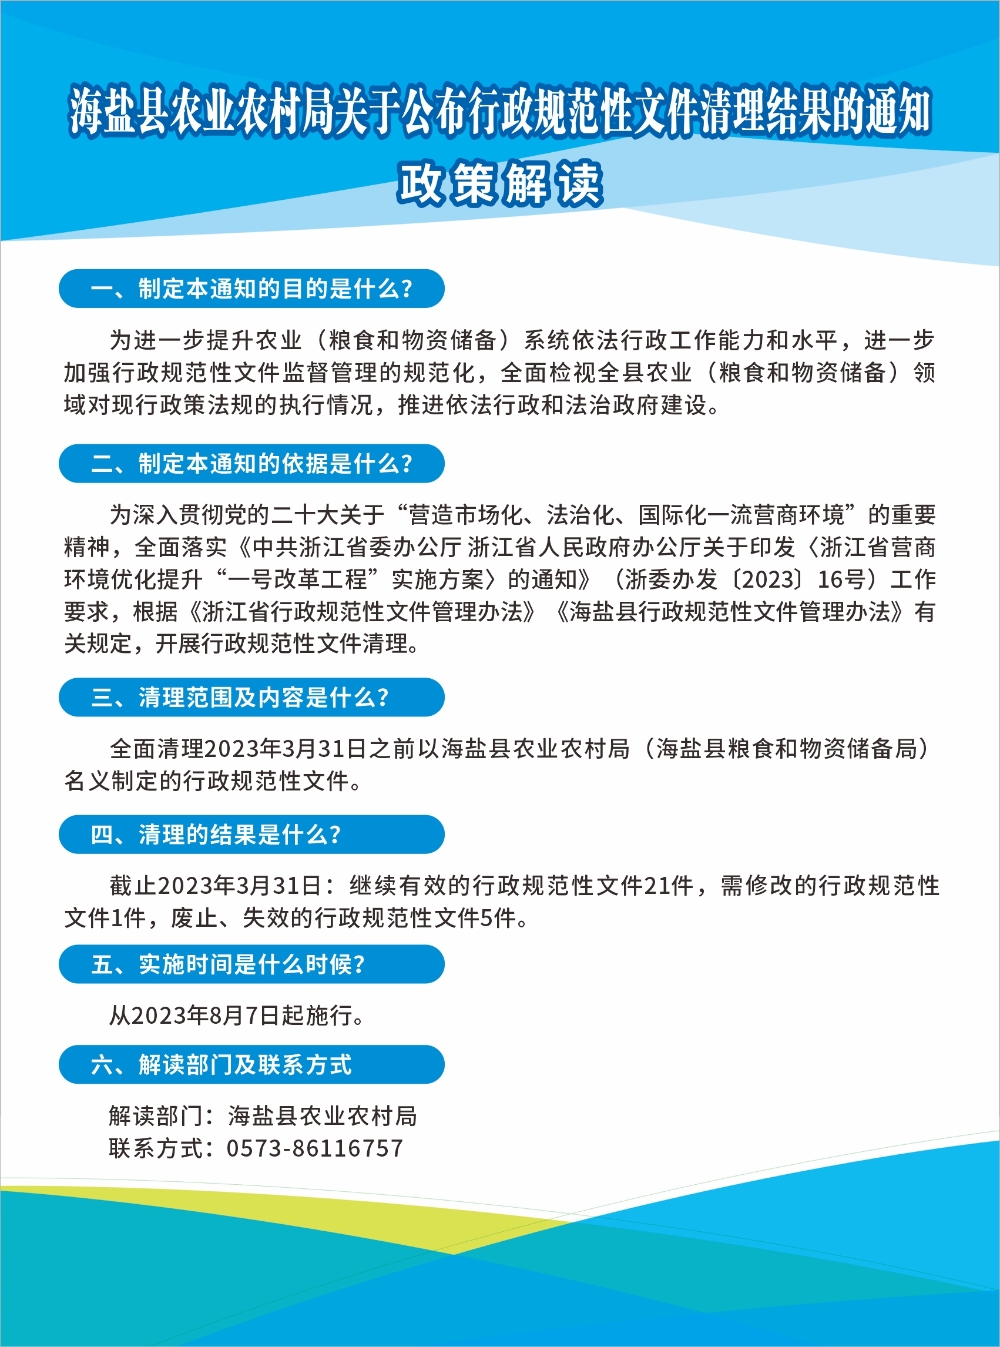 海盐县农业农村局关于公布行政规范性文件清理结果的通知图解.jpg